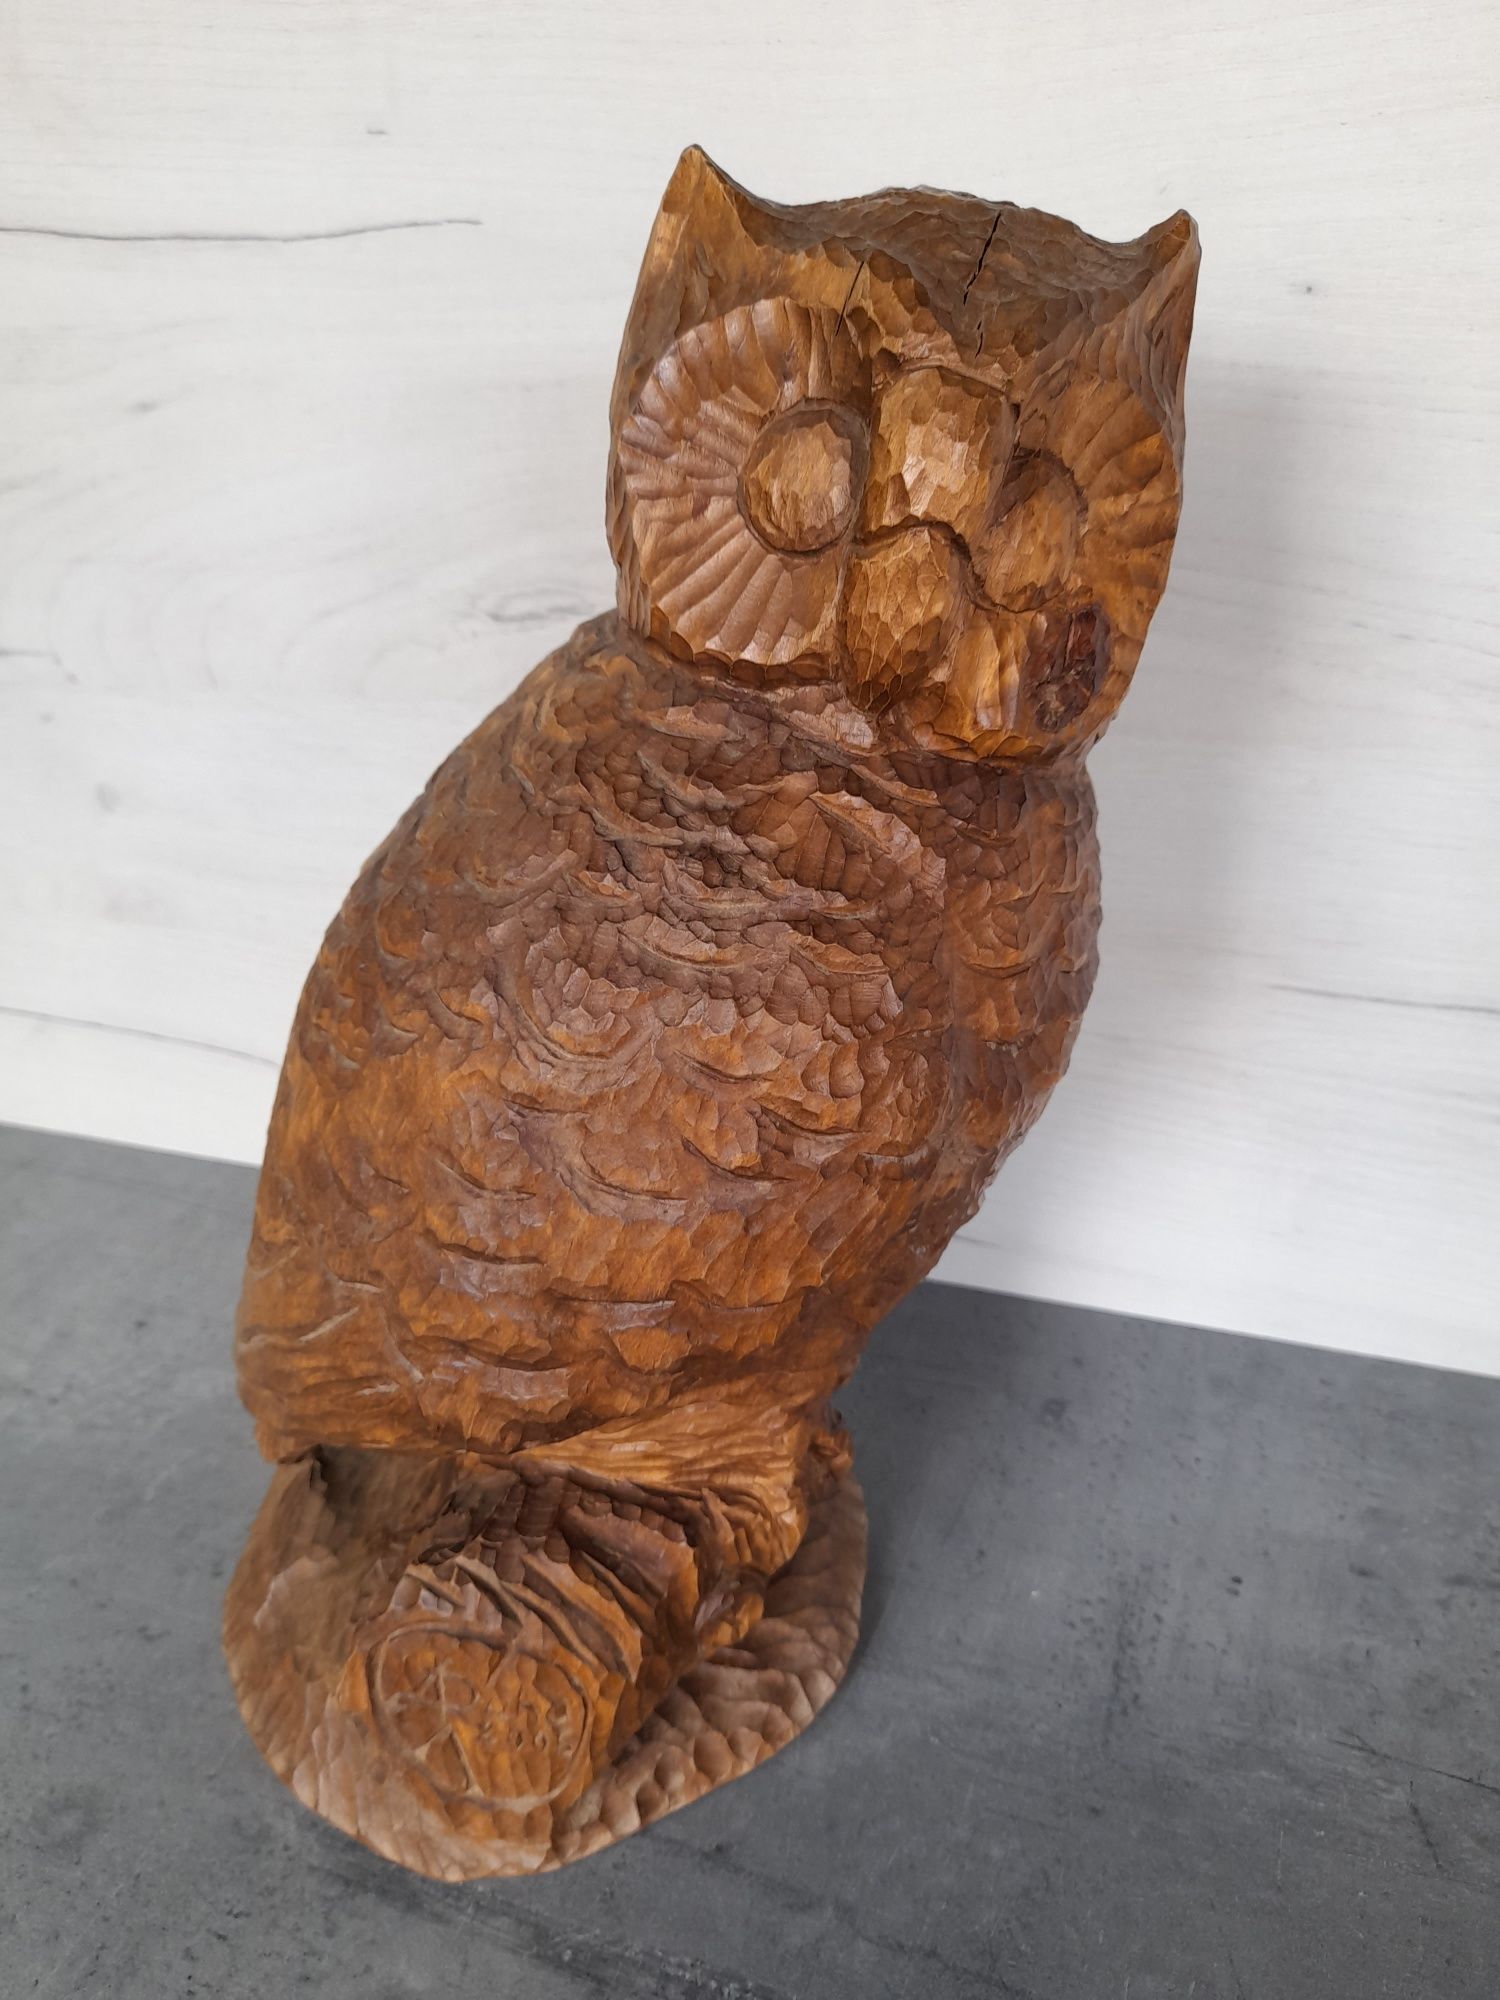 Sowa - rzeźba z drewna lipy wysoka 35cm. Las ptaki. Leśne ptaki